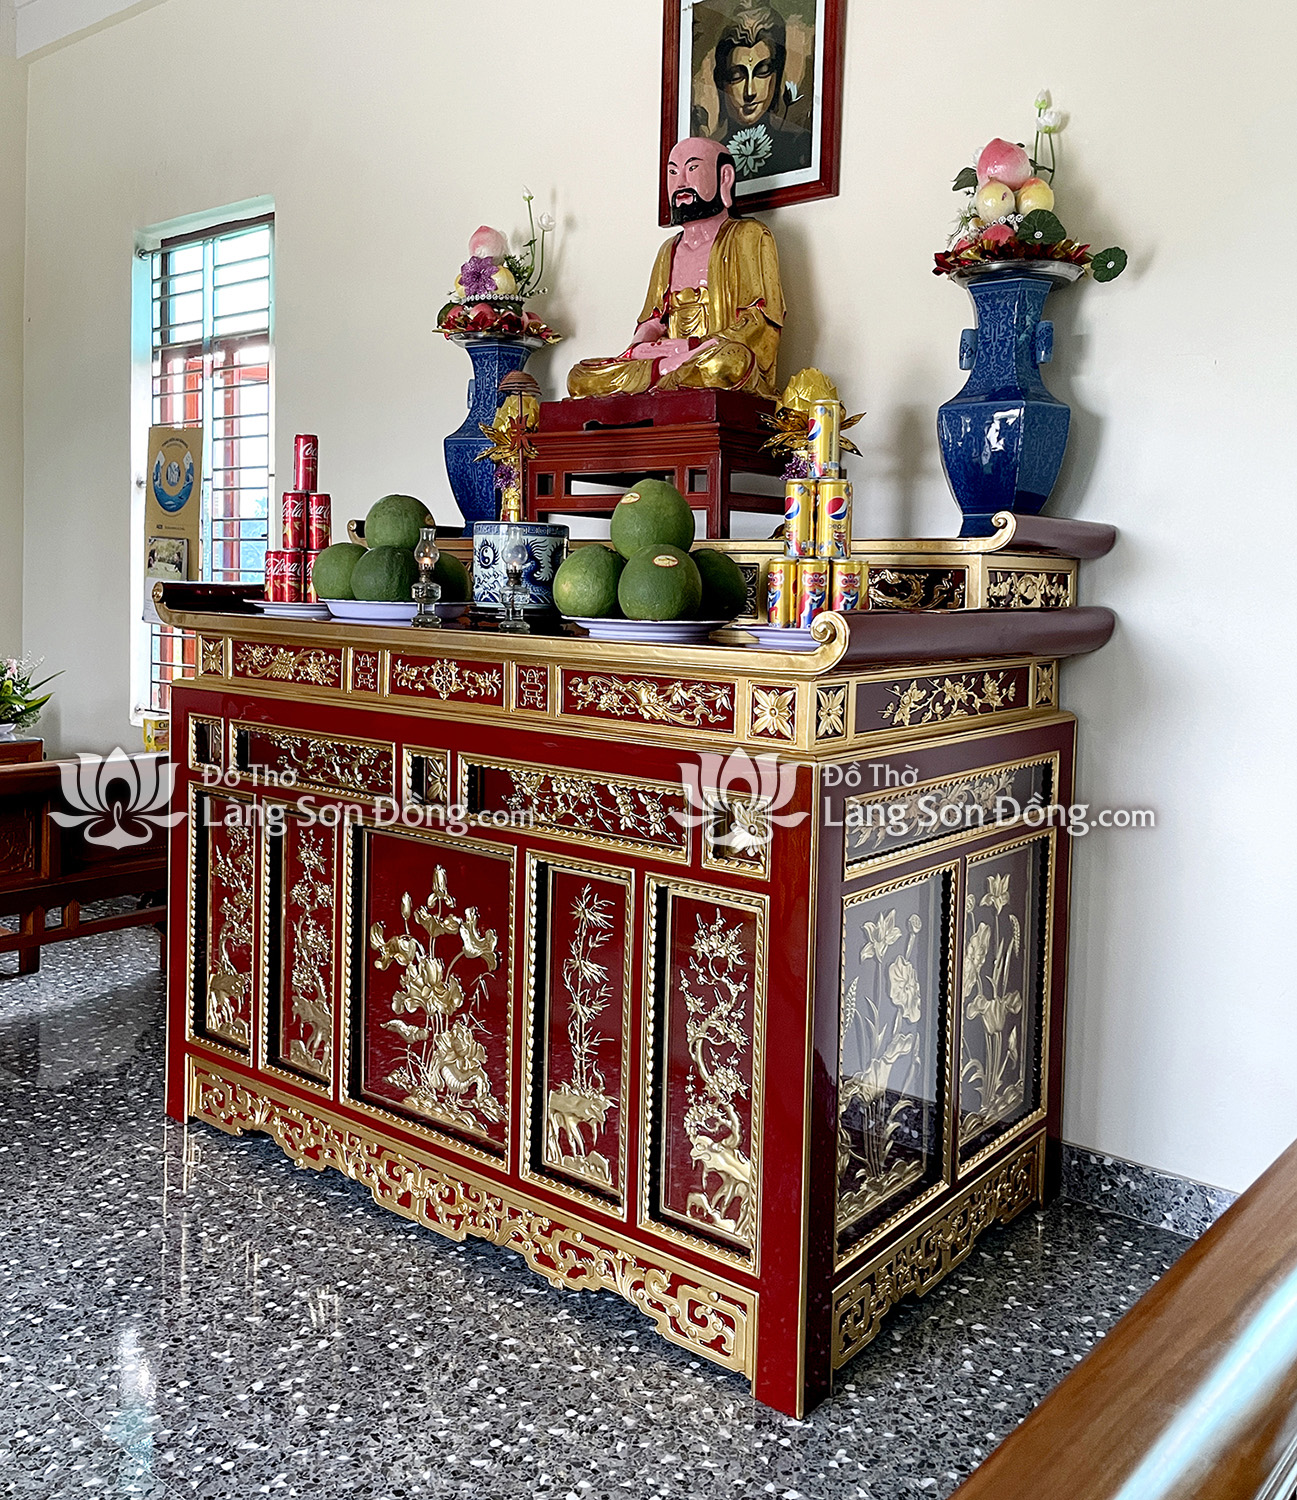 Bàn thờ Chấp Tải sơn son thếp vàng, chùa Huyền Quang - Hải Dương